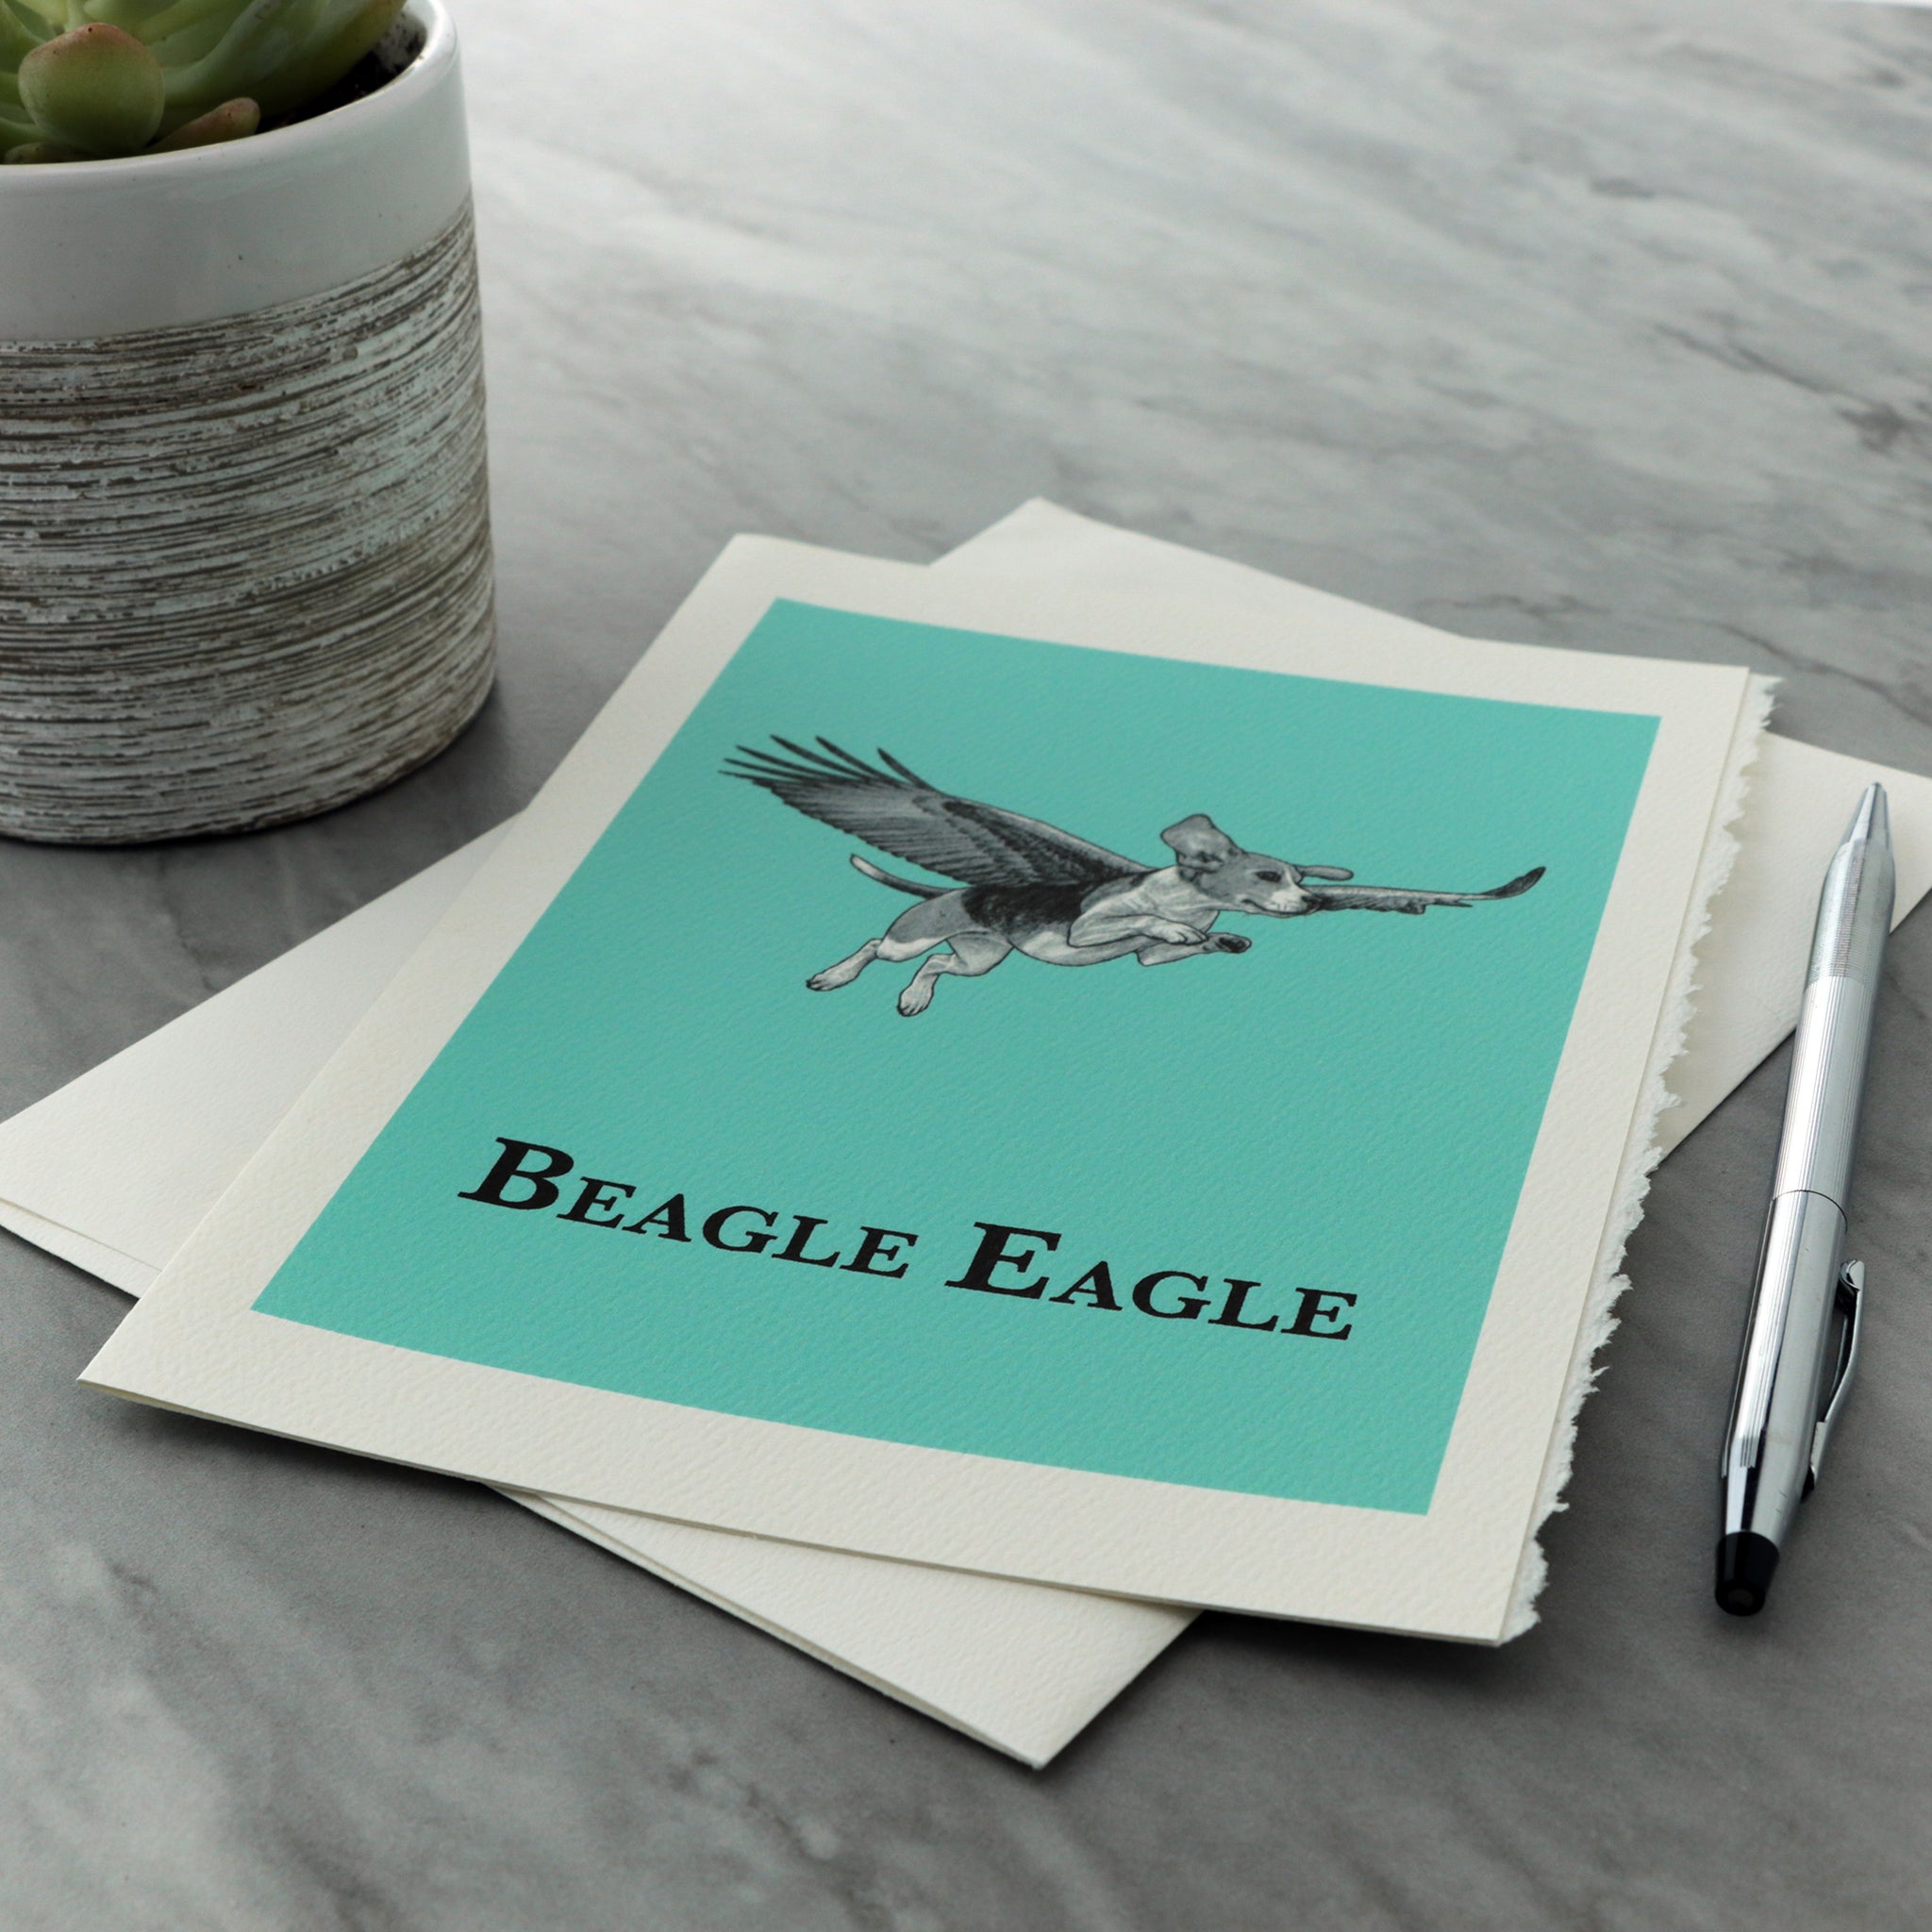 Beagle Eagle 5x7" Greeting Card